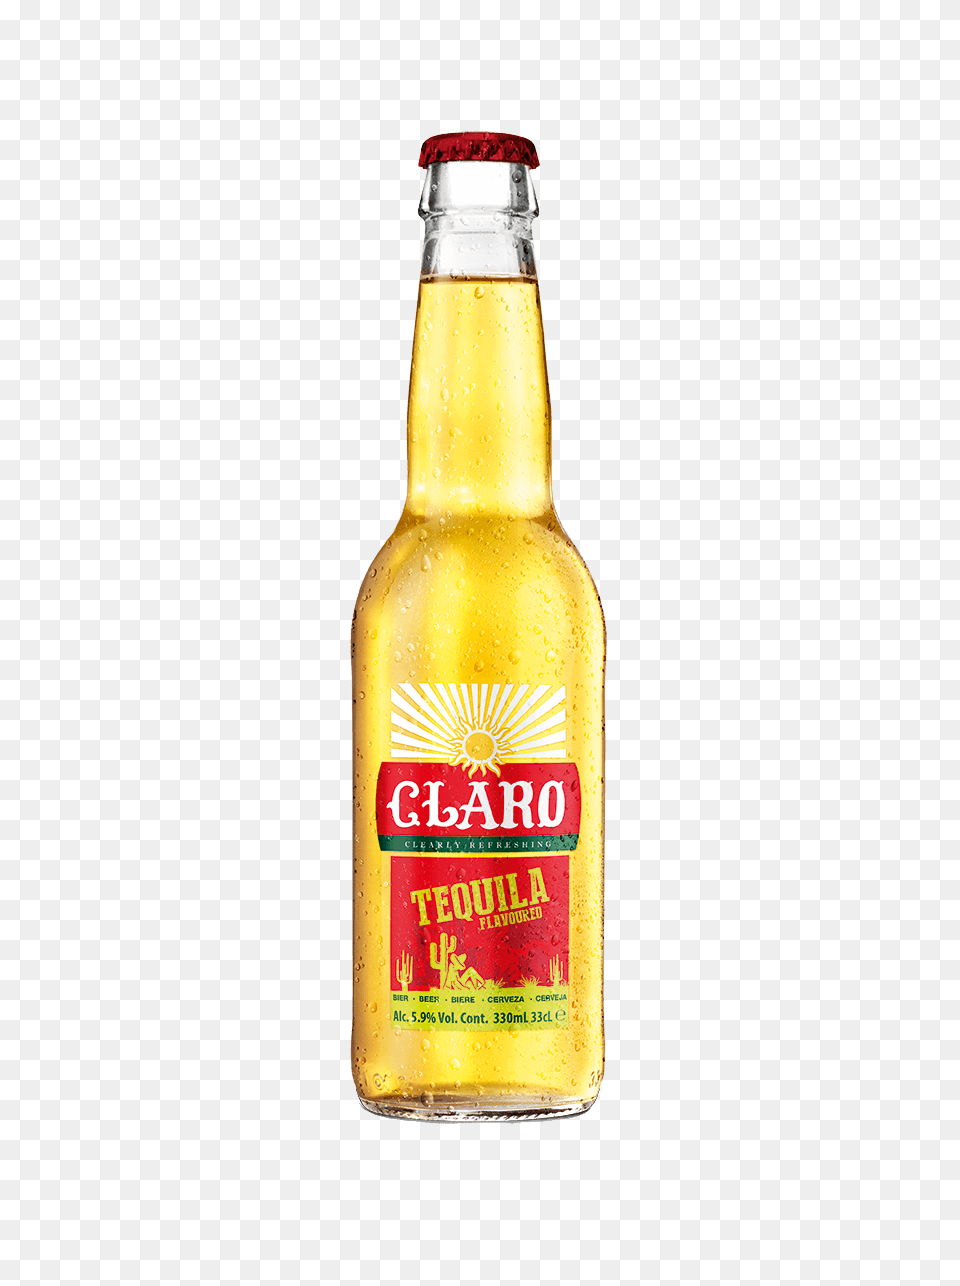 Tequila, Alcohol, Beer, Beverage, Bottle Png Image